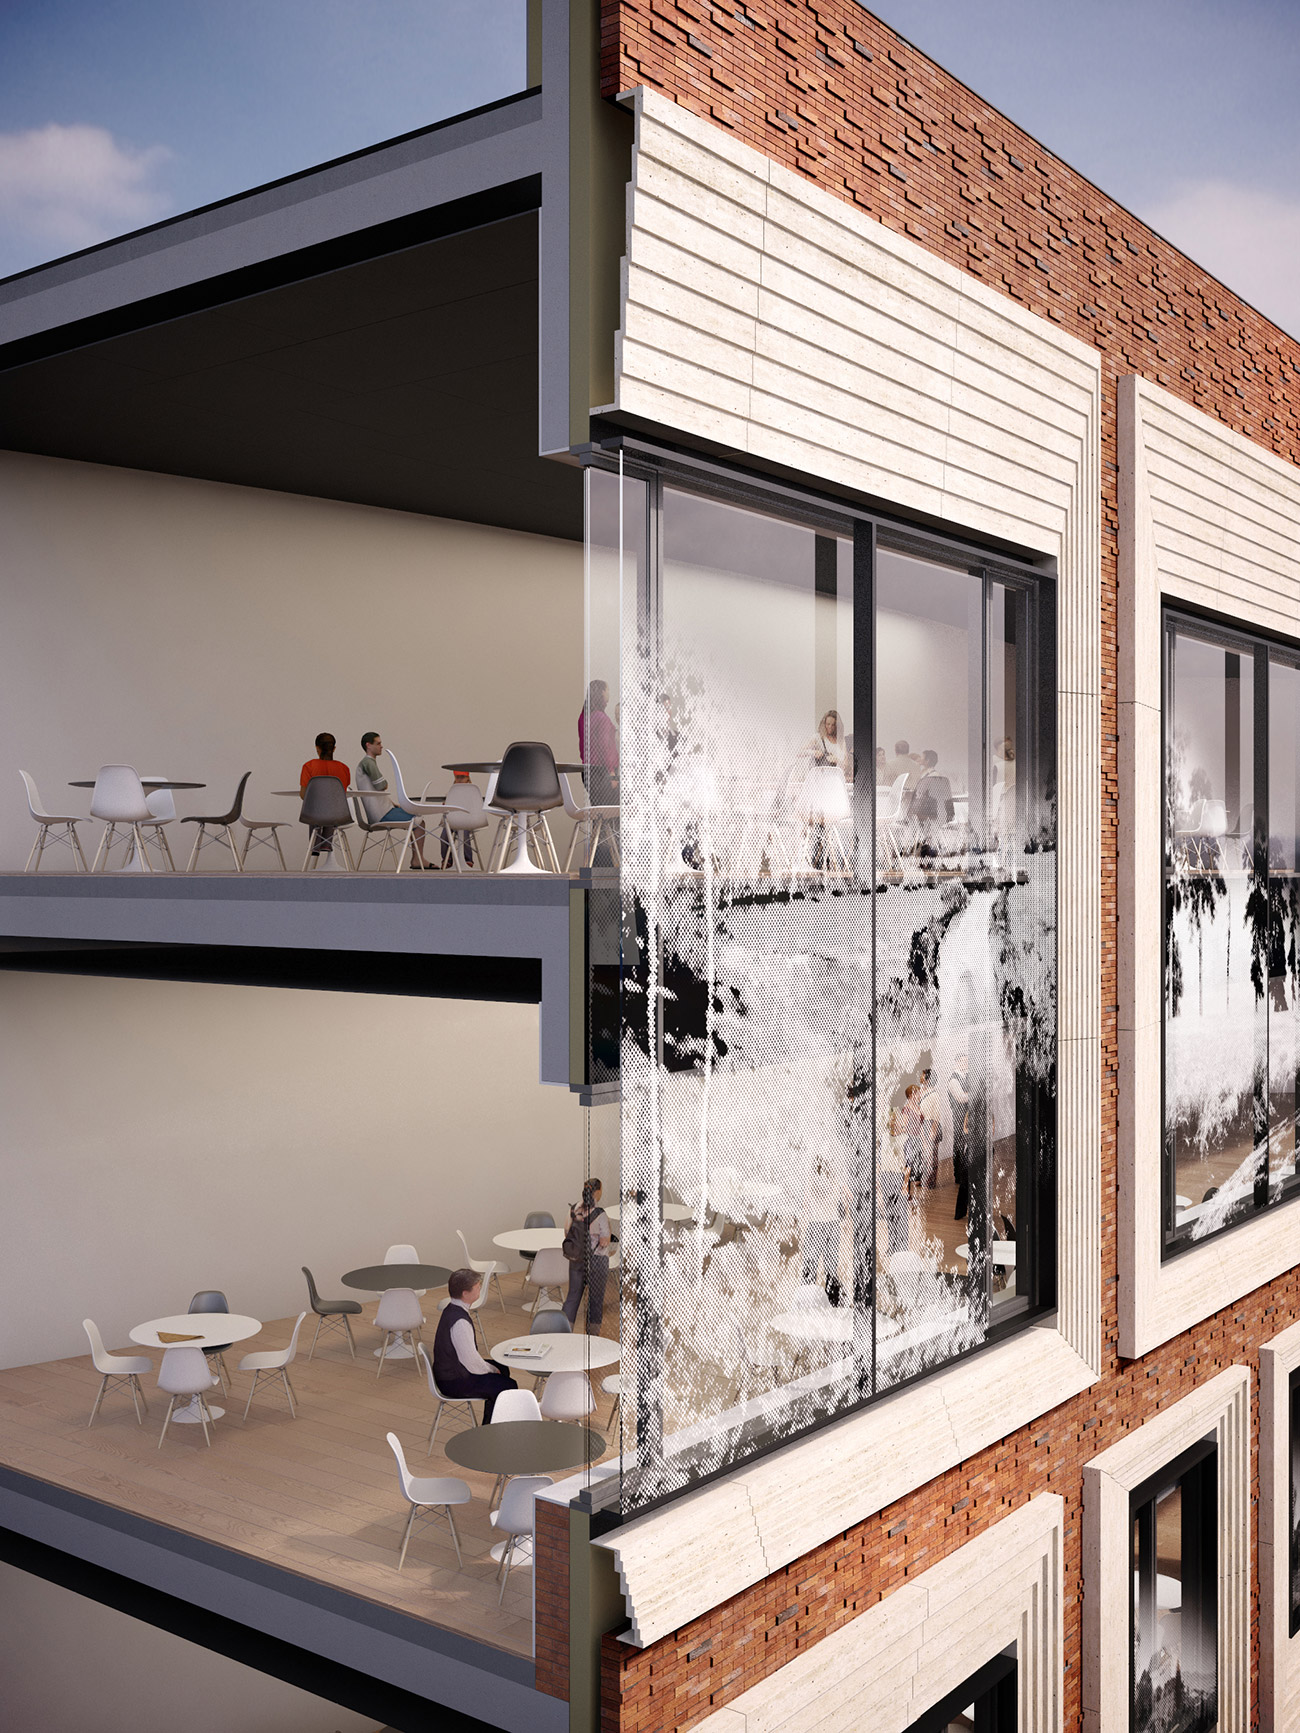 Os arquitetos da SPEECH refletem a imagem do que é conhecido como “salão de exposição” na forma como arranjaram as janelas nas fachadas do novo edifício. (Foto: SPEECH)